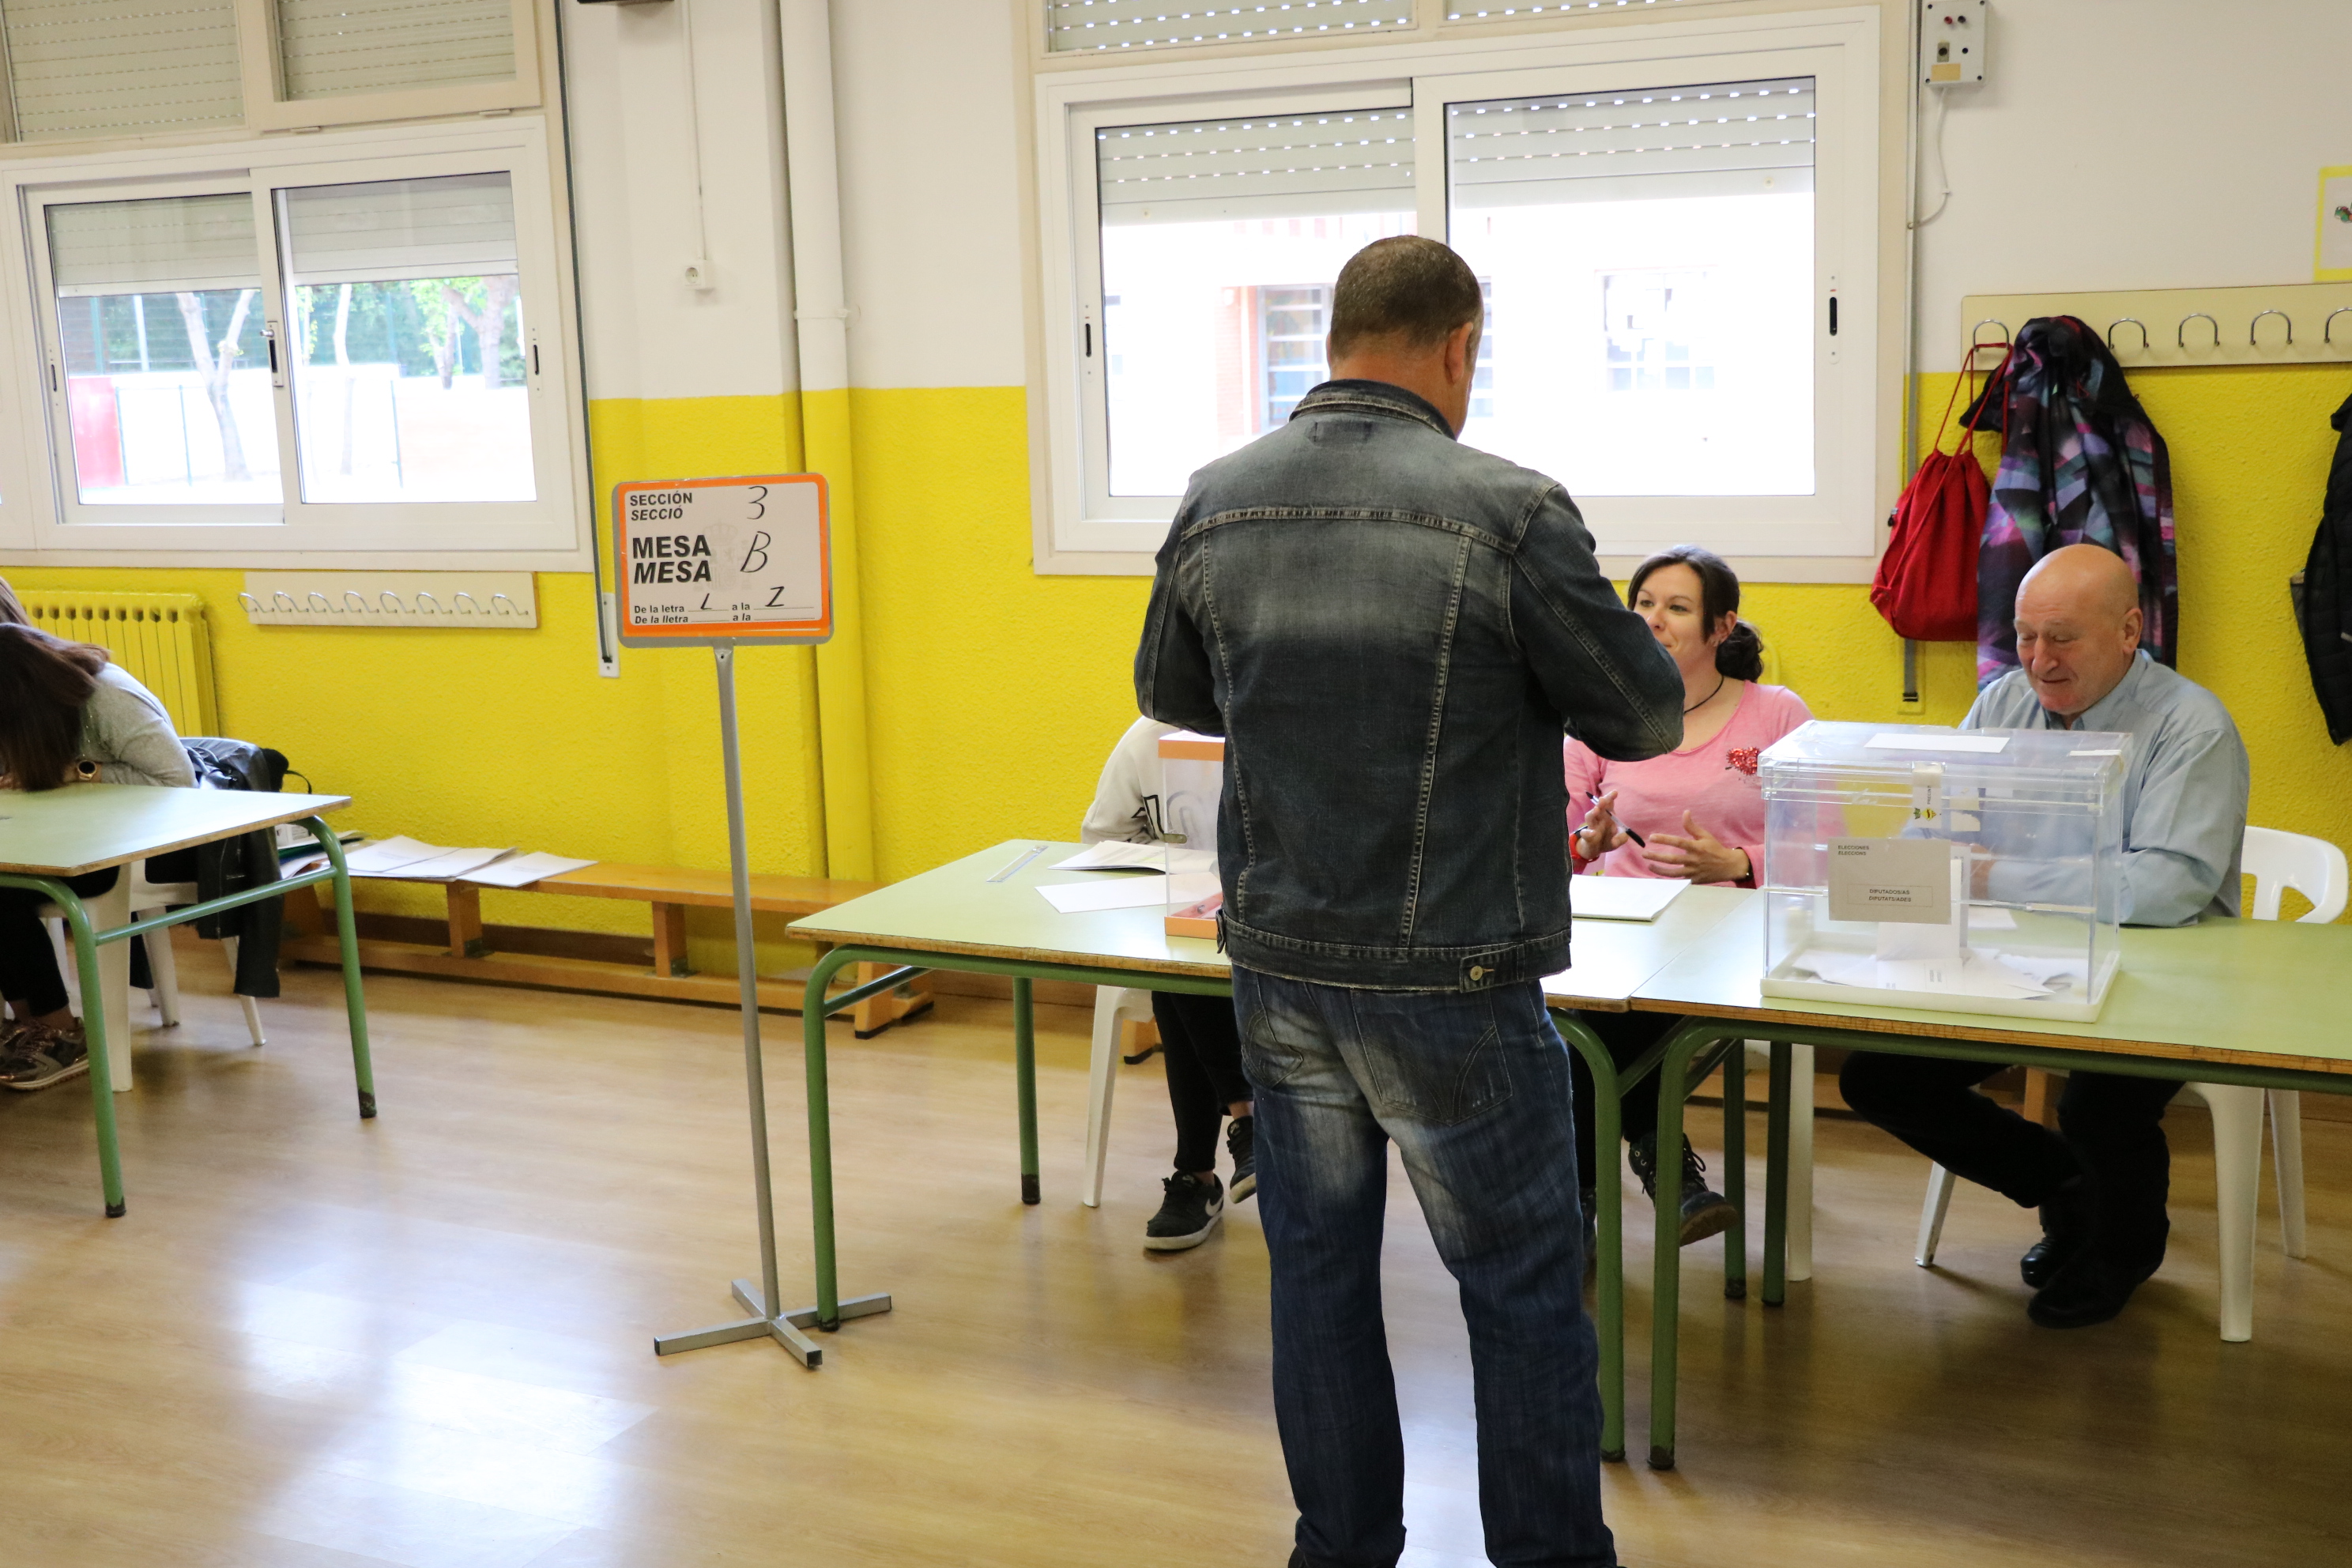 La jornada de les eleccions generals comença amb normalitat a la Llagosta